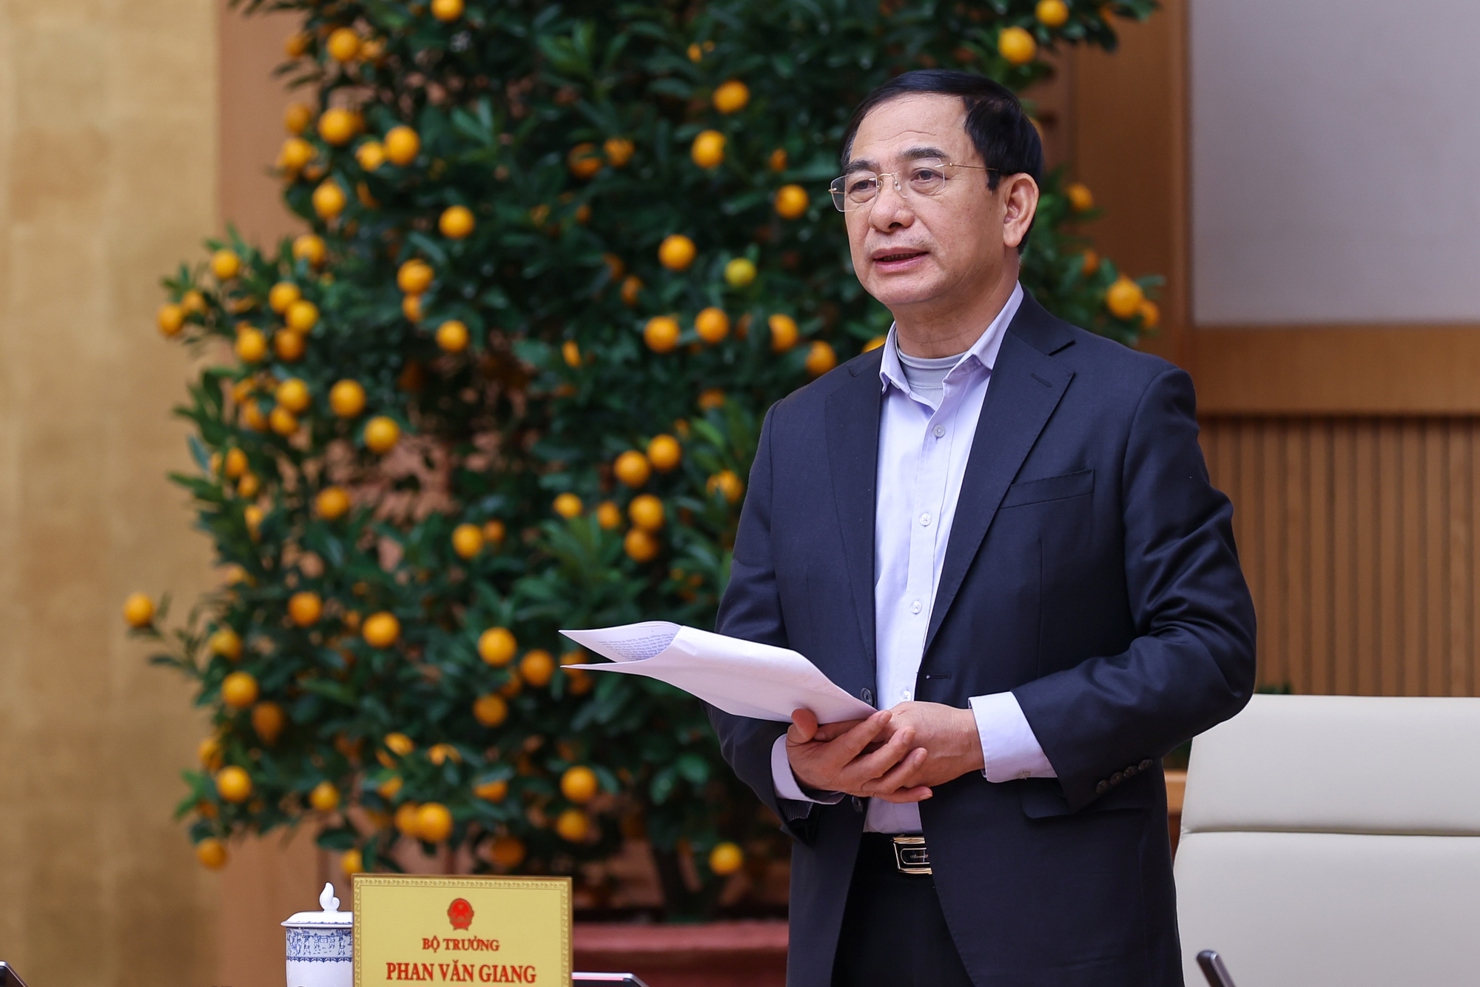 Bộ trưởng Phan Văn Giang ph&aacute;t biểu tại cuộc họp. Ảnh VGP/Nhật Bắc